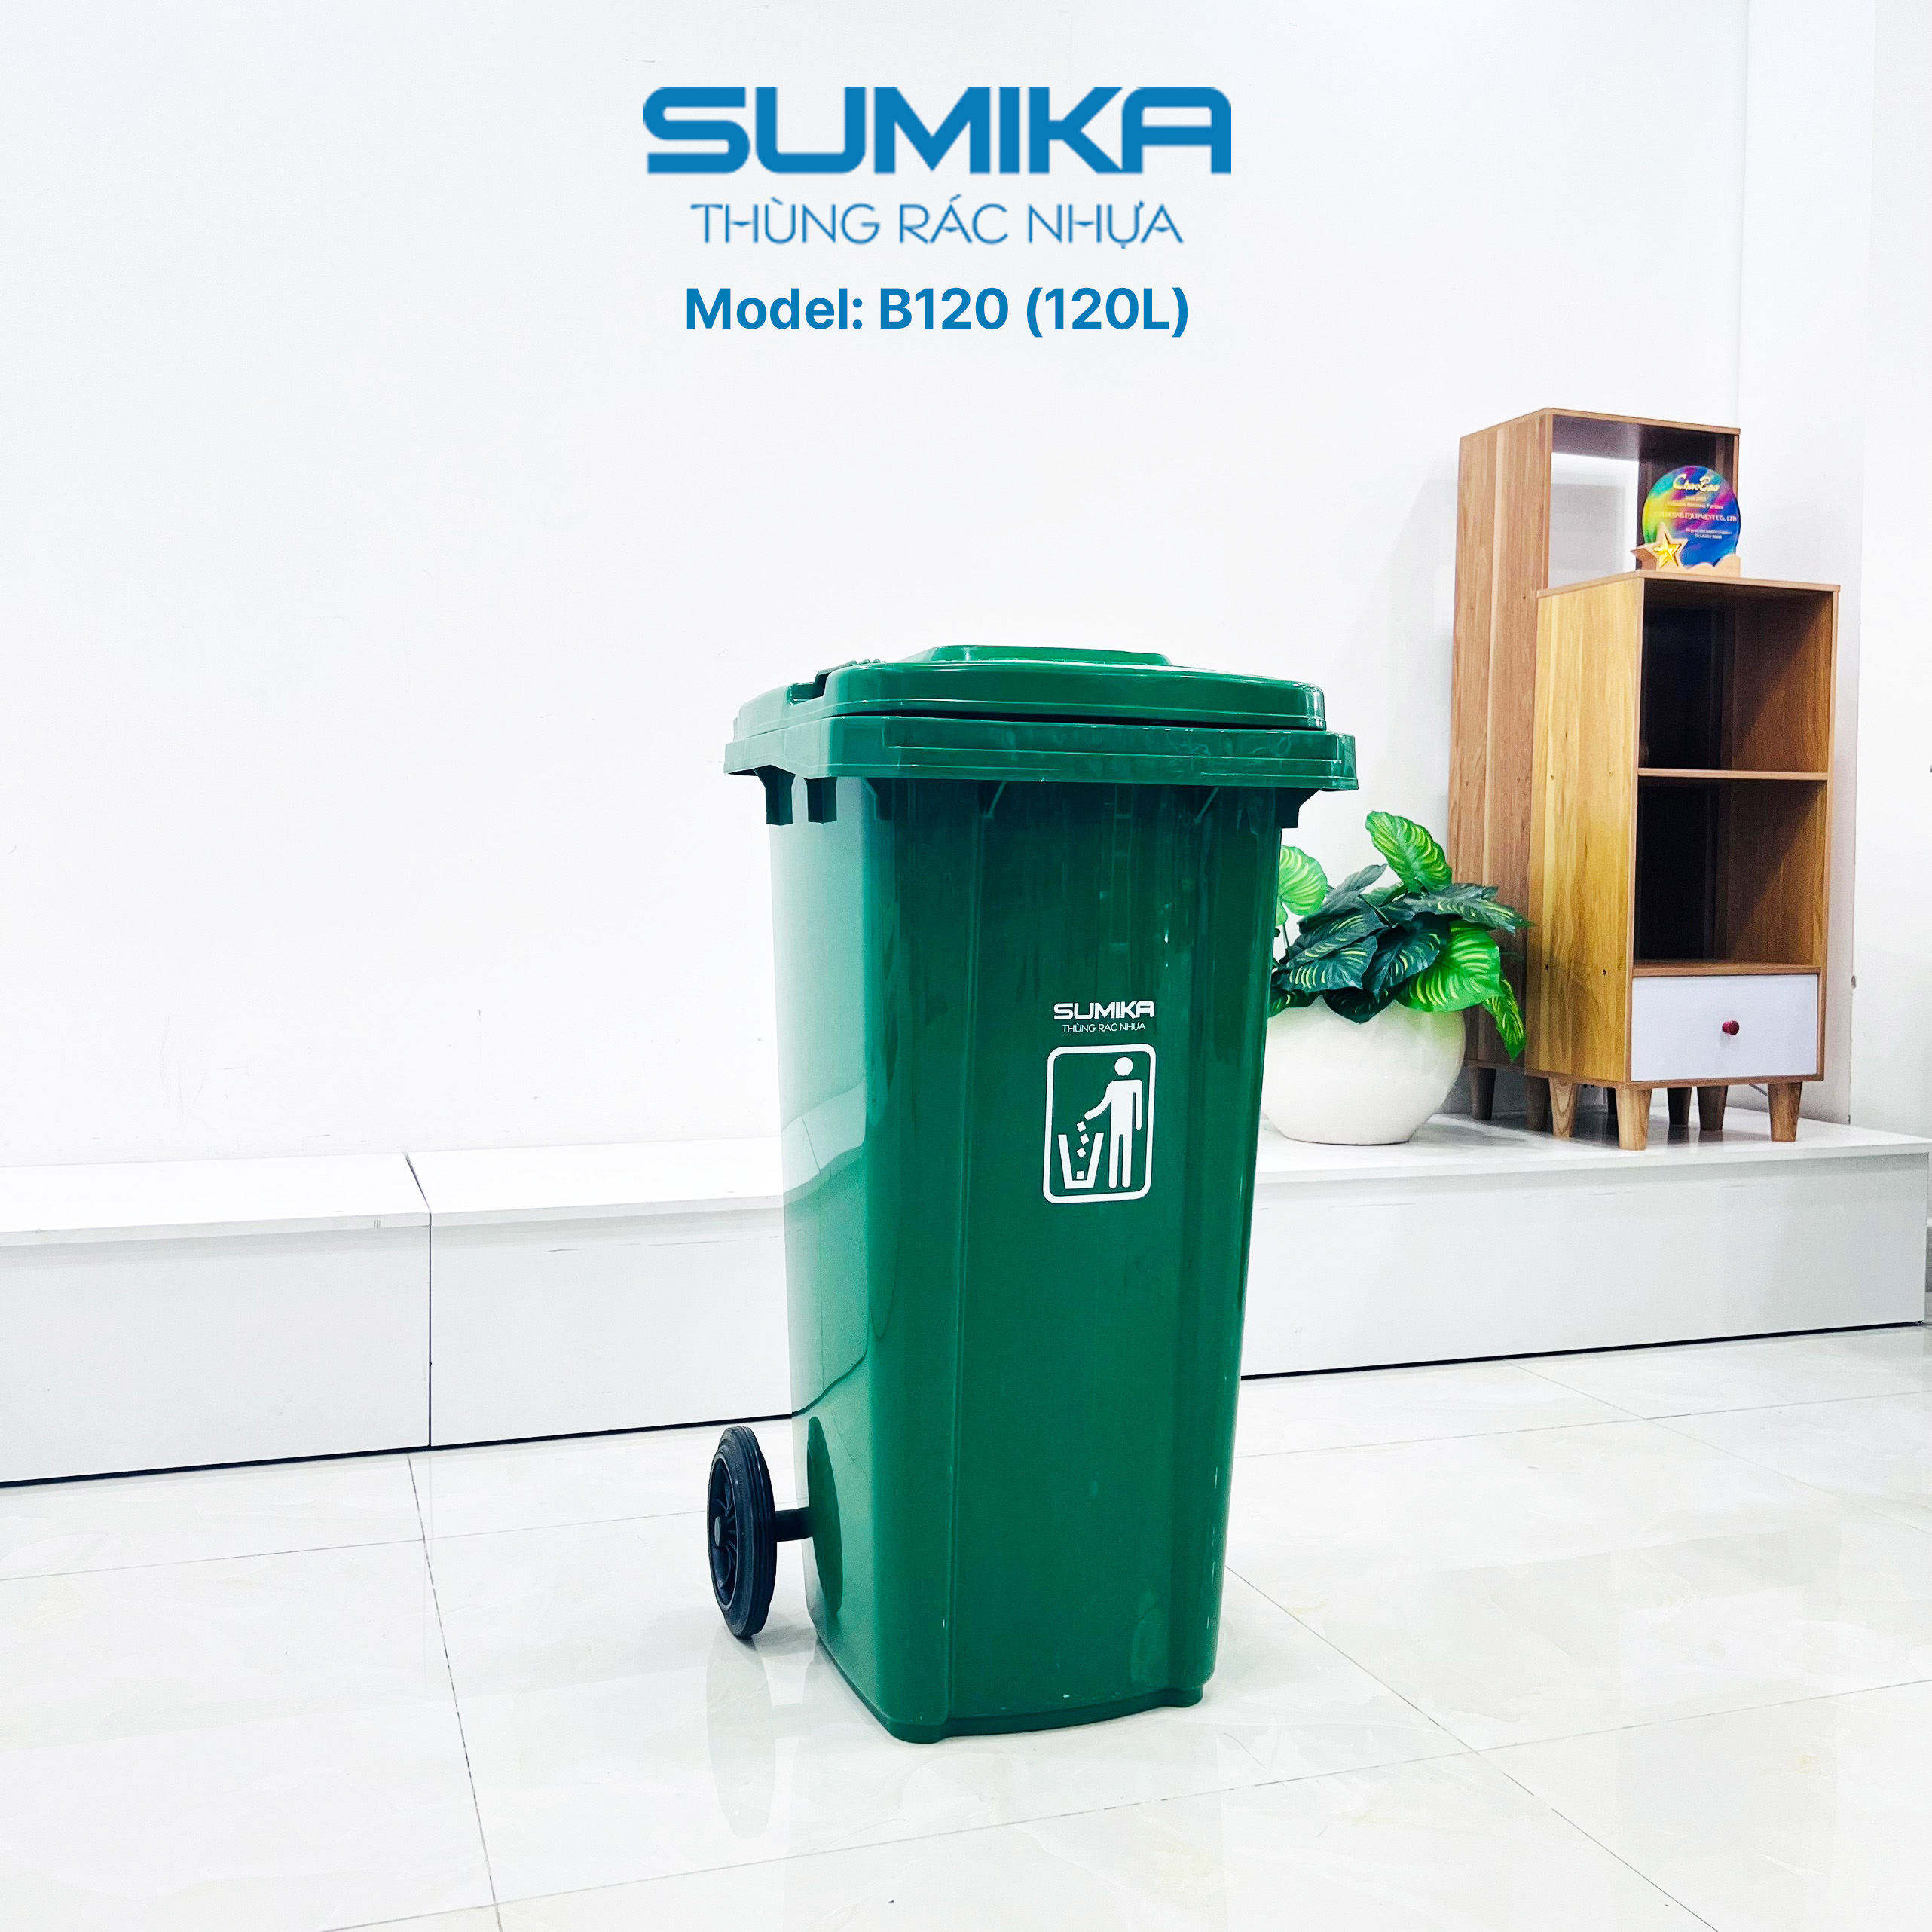 Thùng rác nhựa công nghiệp SUMIKA B120, dung tích 120L (Green)